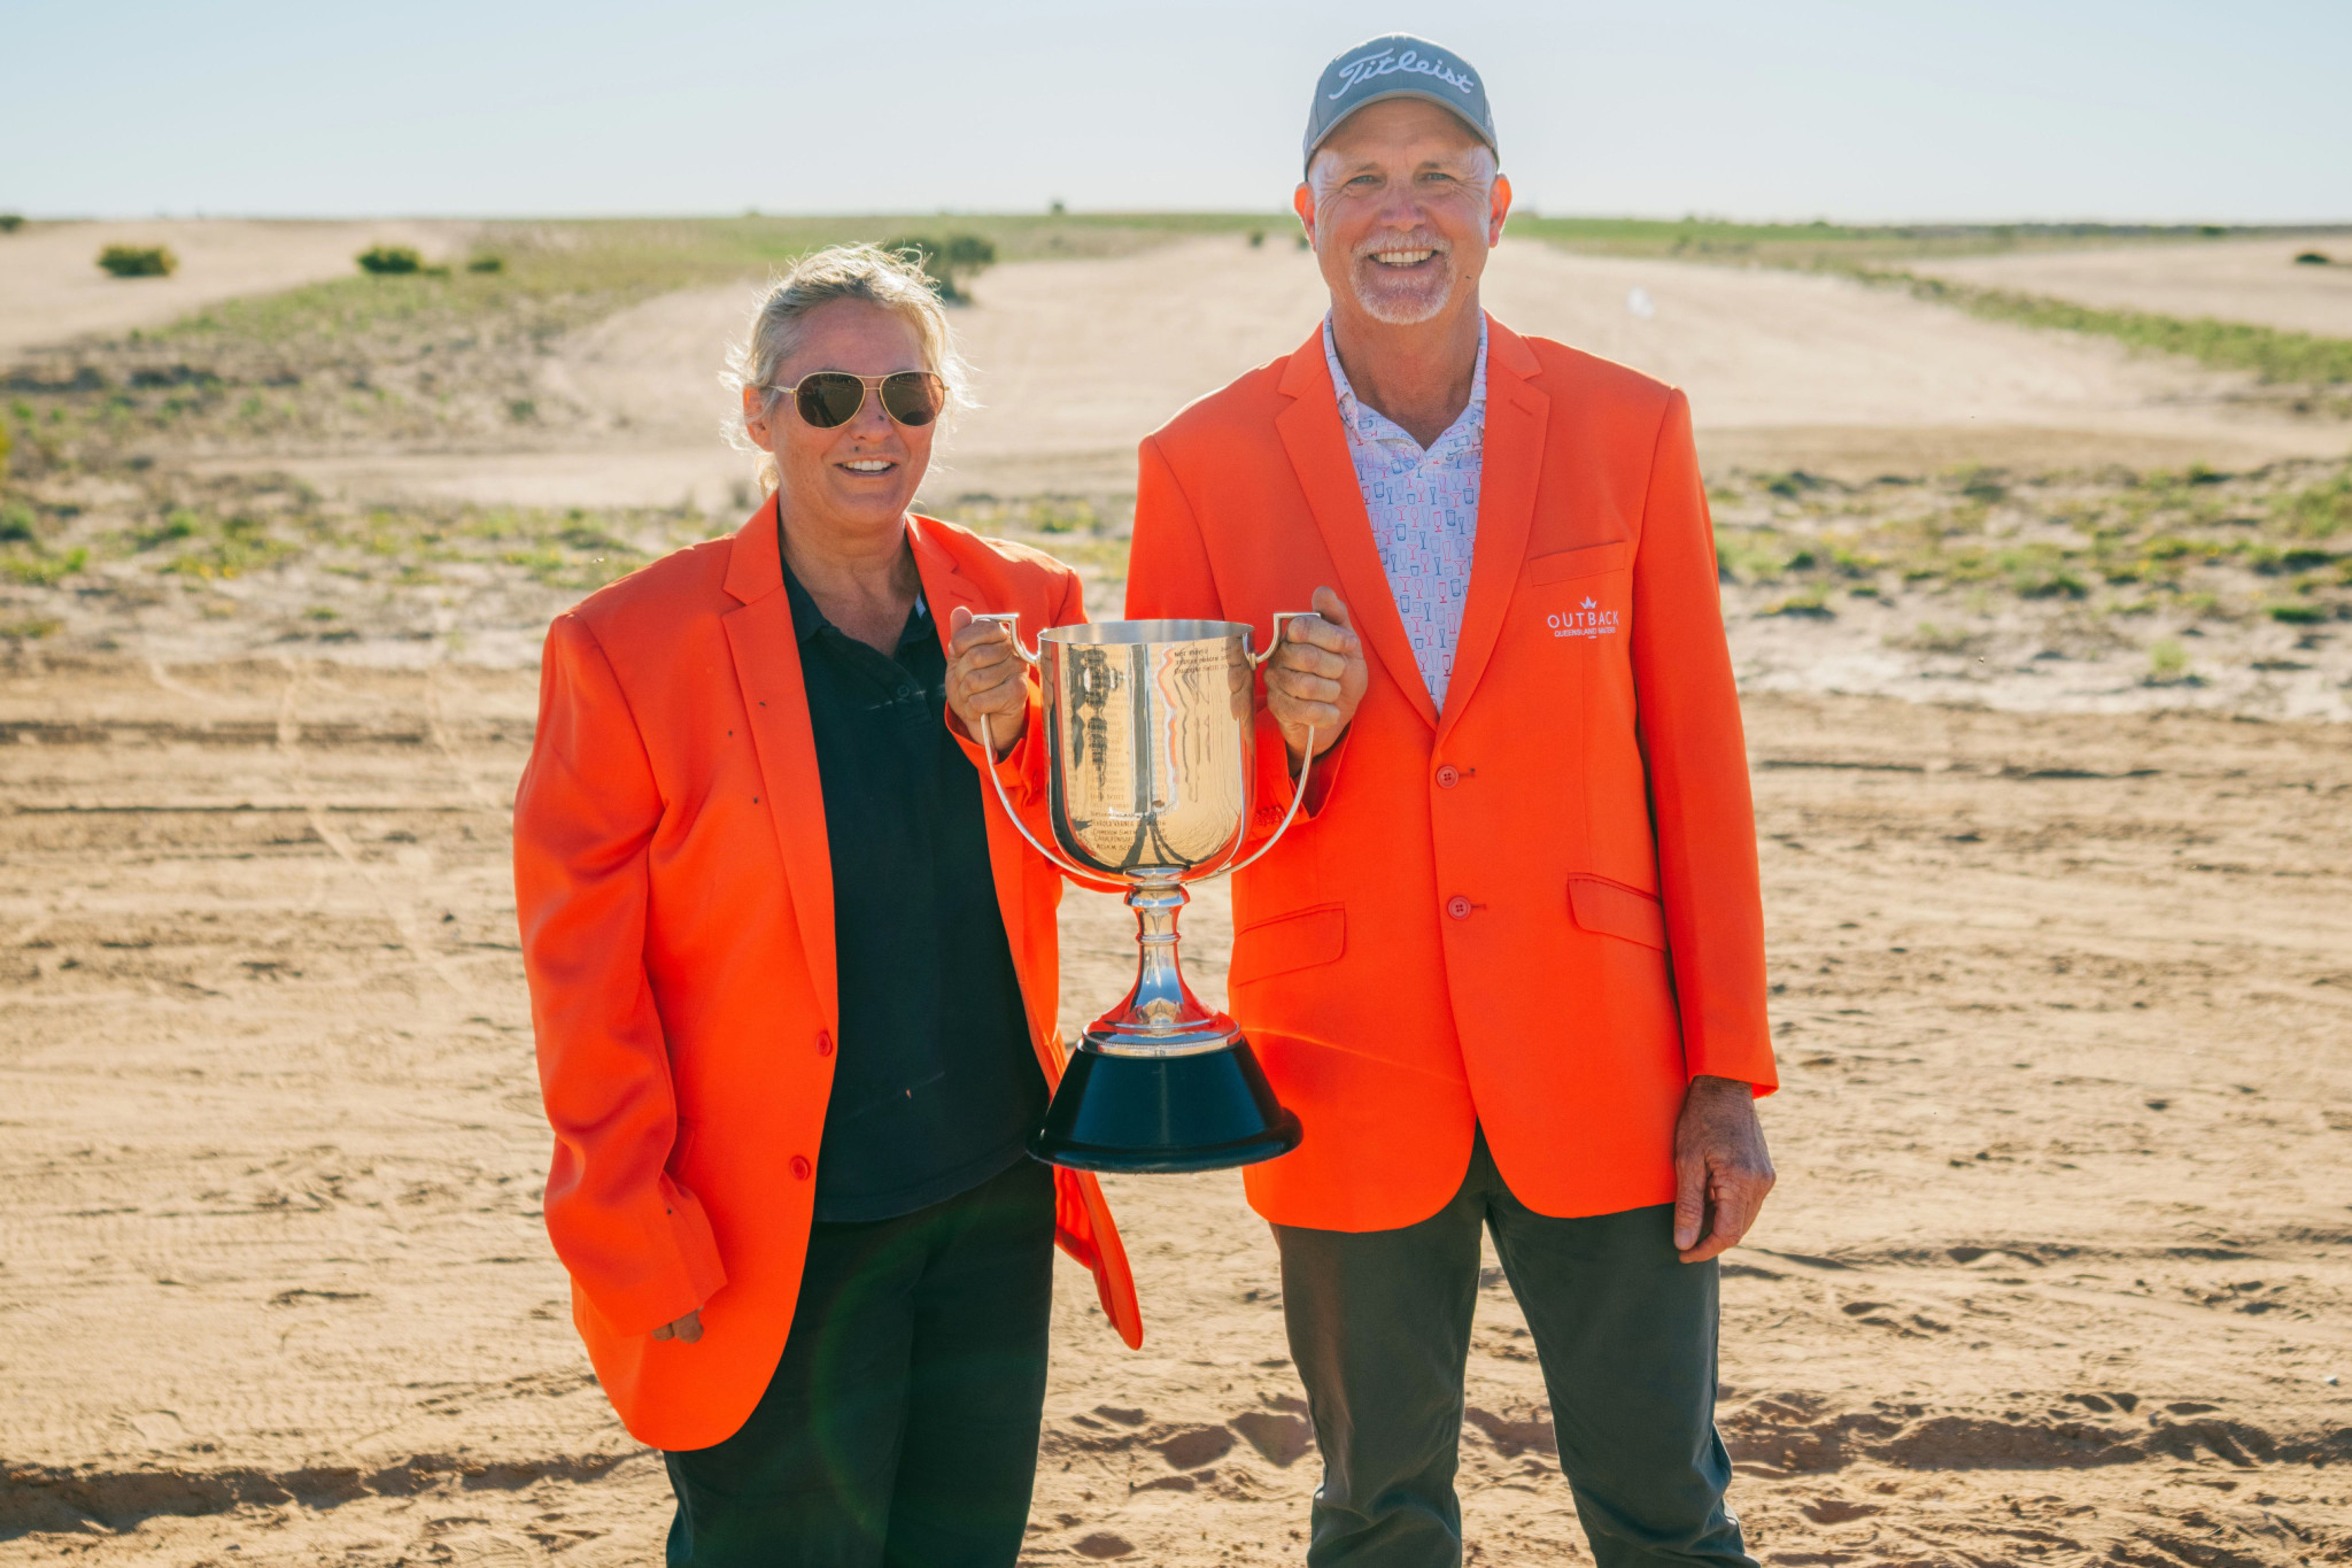 Orange jacket winners Wendy Bodkin and Garry Meek.